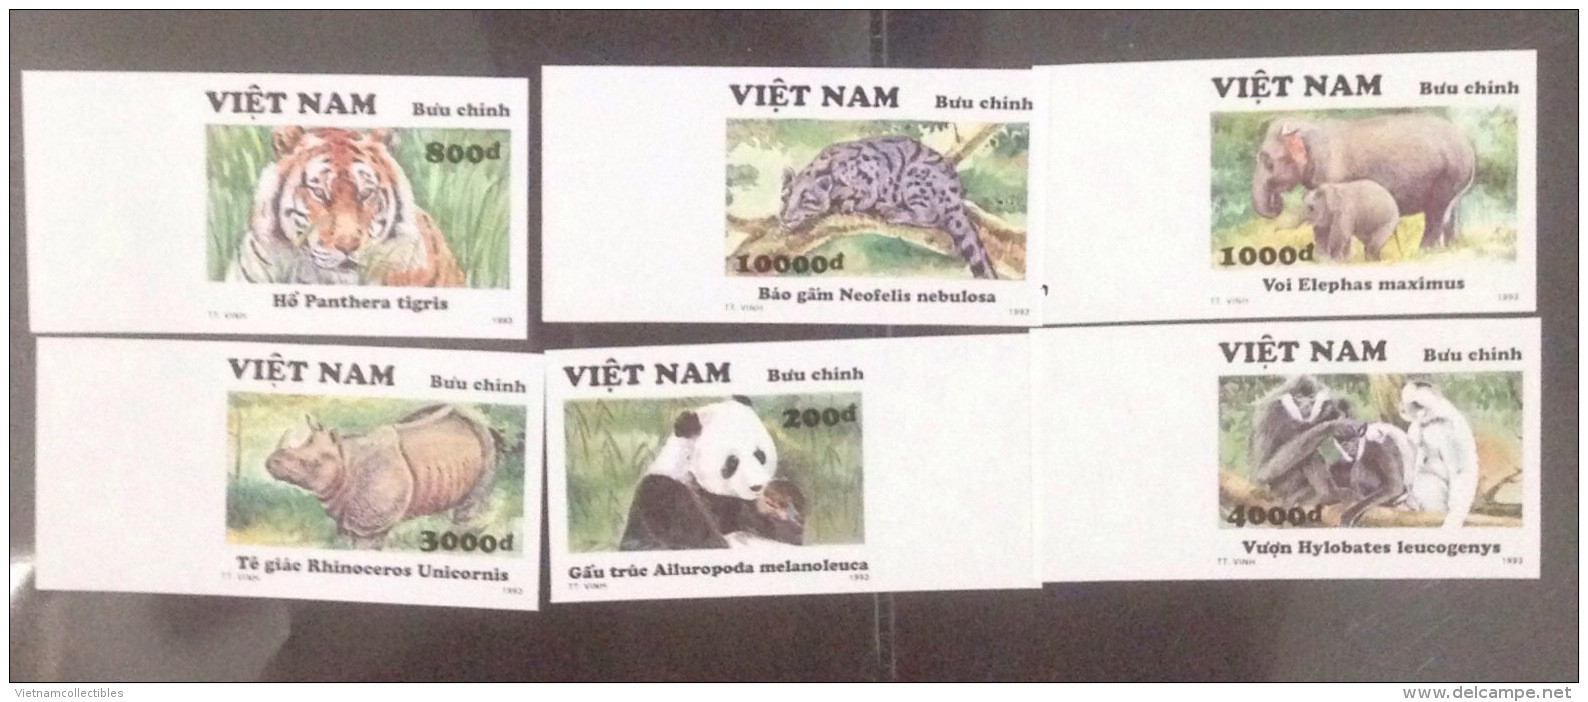 Vietnam Viet Nam MNH Imperf Stamps 1993 : Wild Animals / Tiger / Elephant / Panda / Gibbon (Ms662) - Vietnam